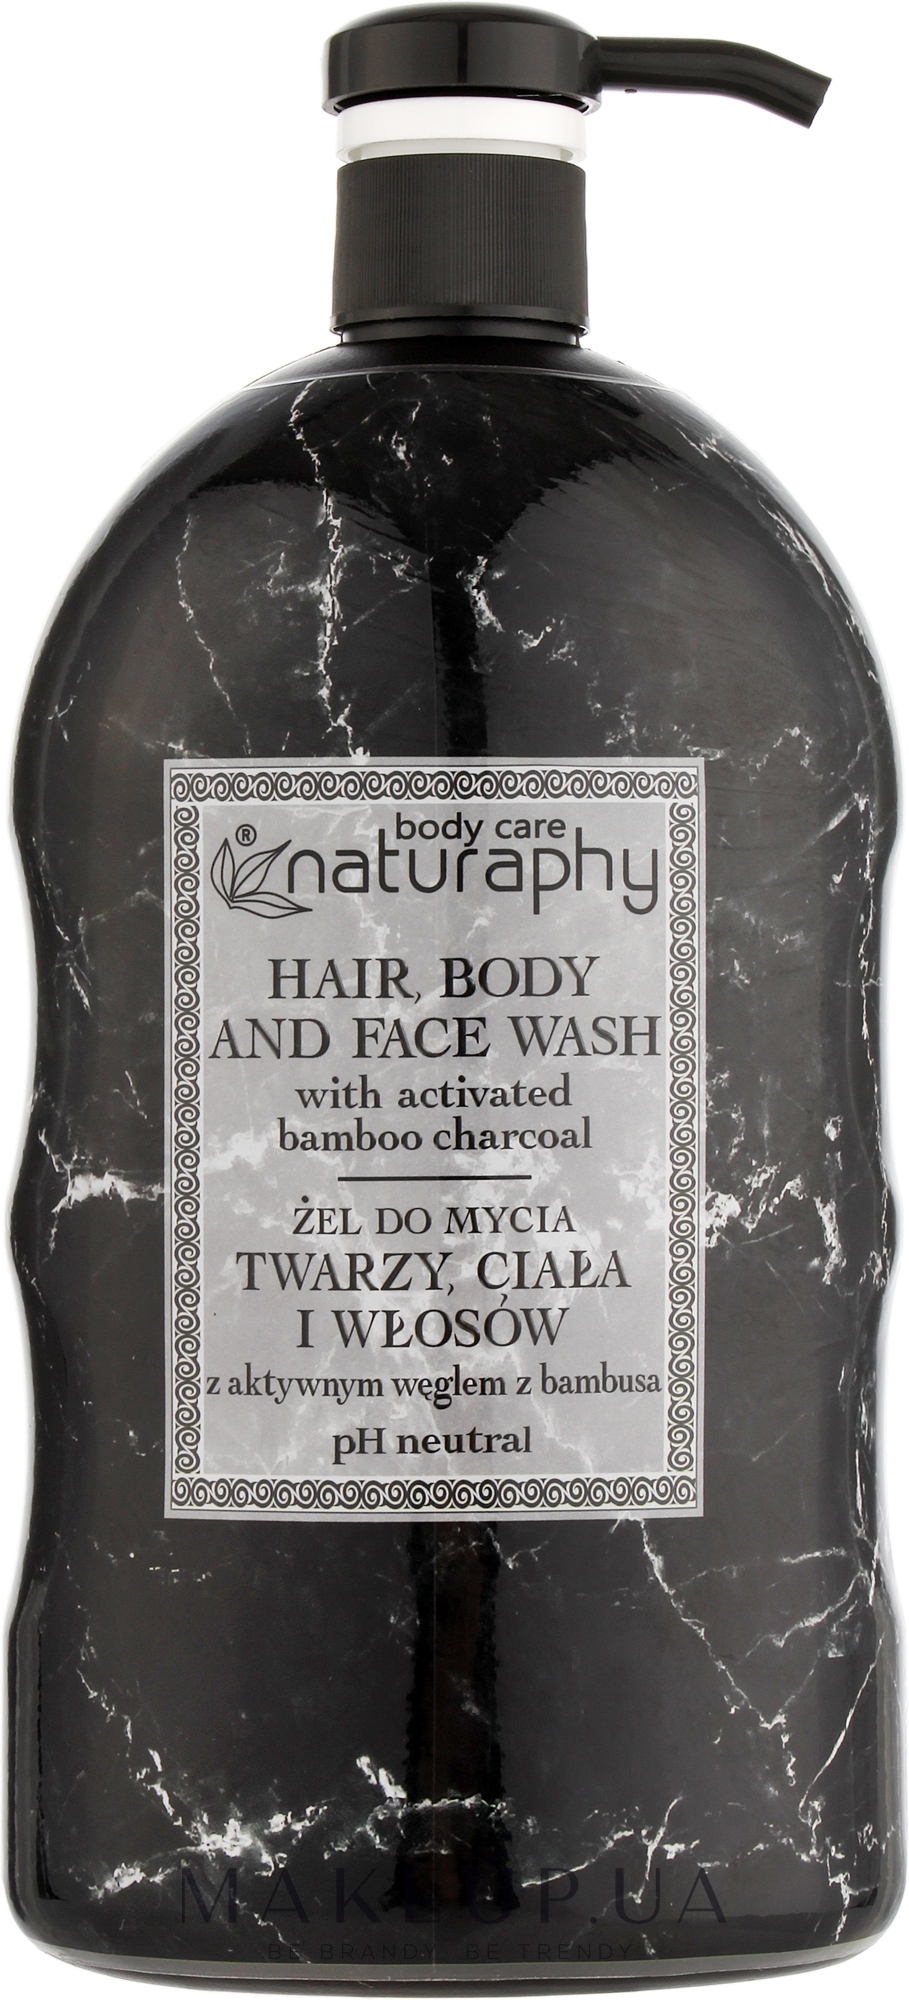 Гель для душа, тела, лица и волос с активированным углем и ароматом сандалового дерева - Naturaphy Hair, Body And Face Wash — фото 1000ml